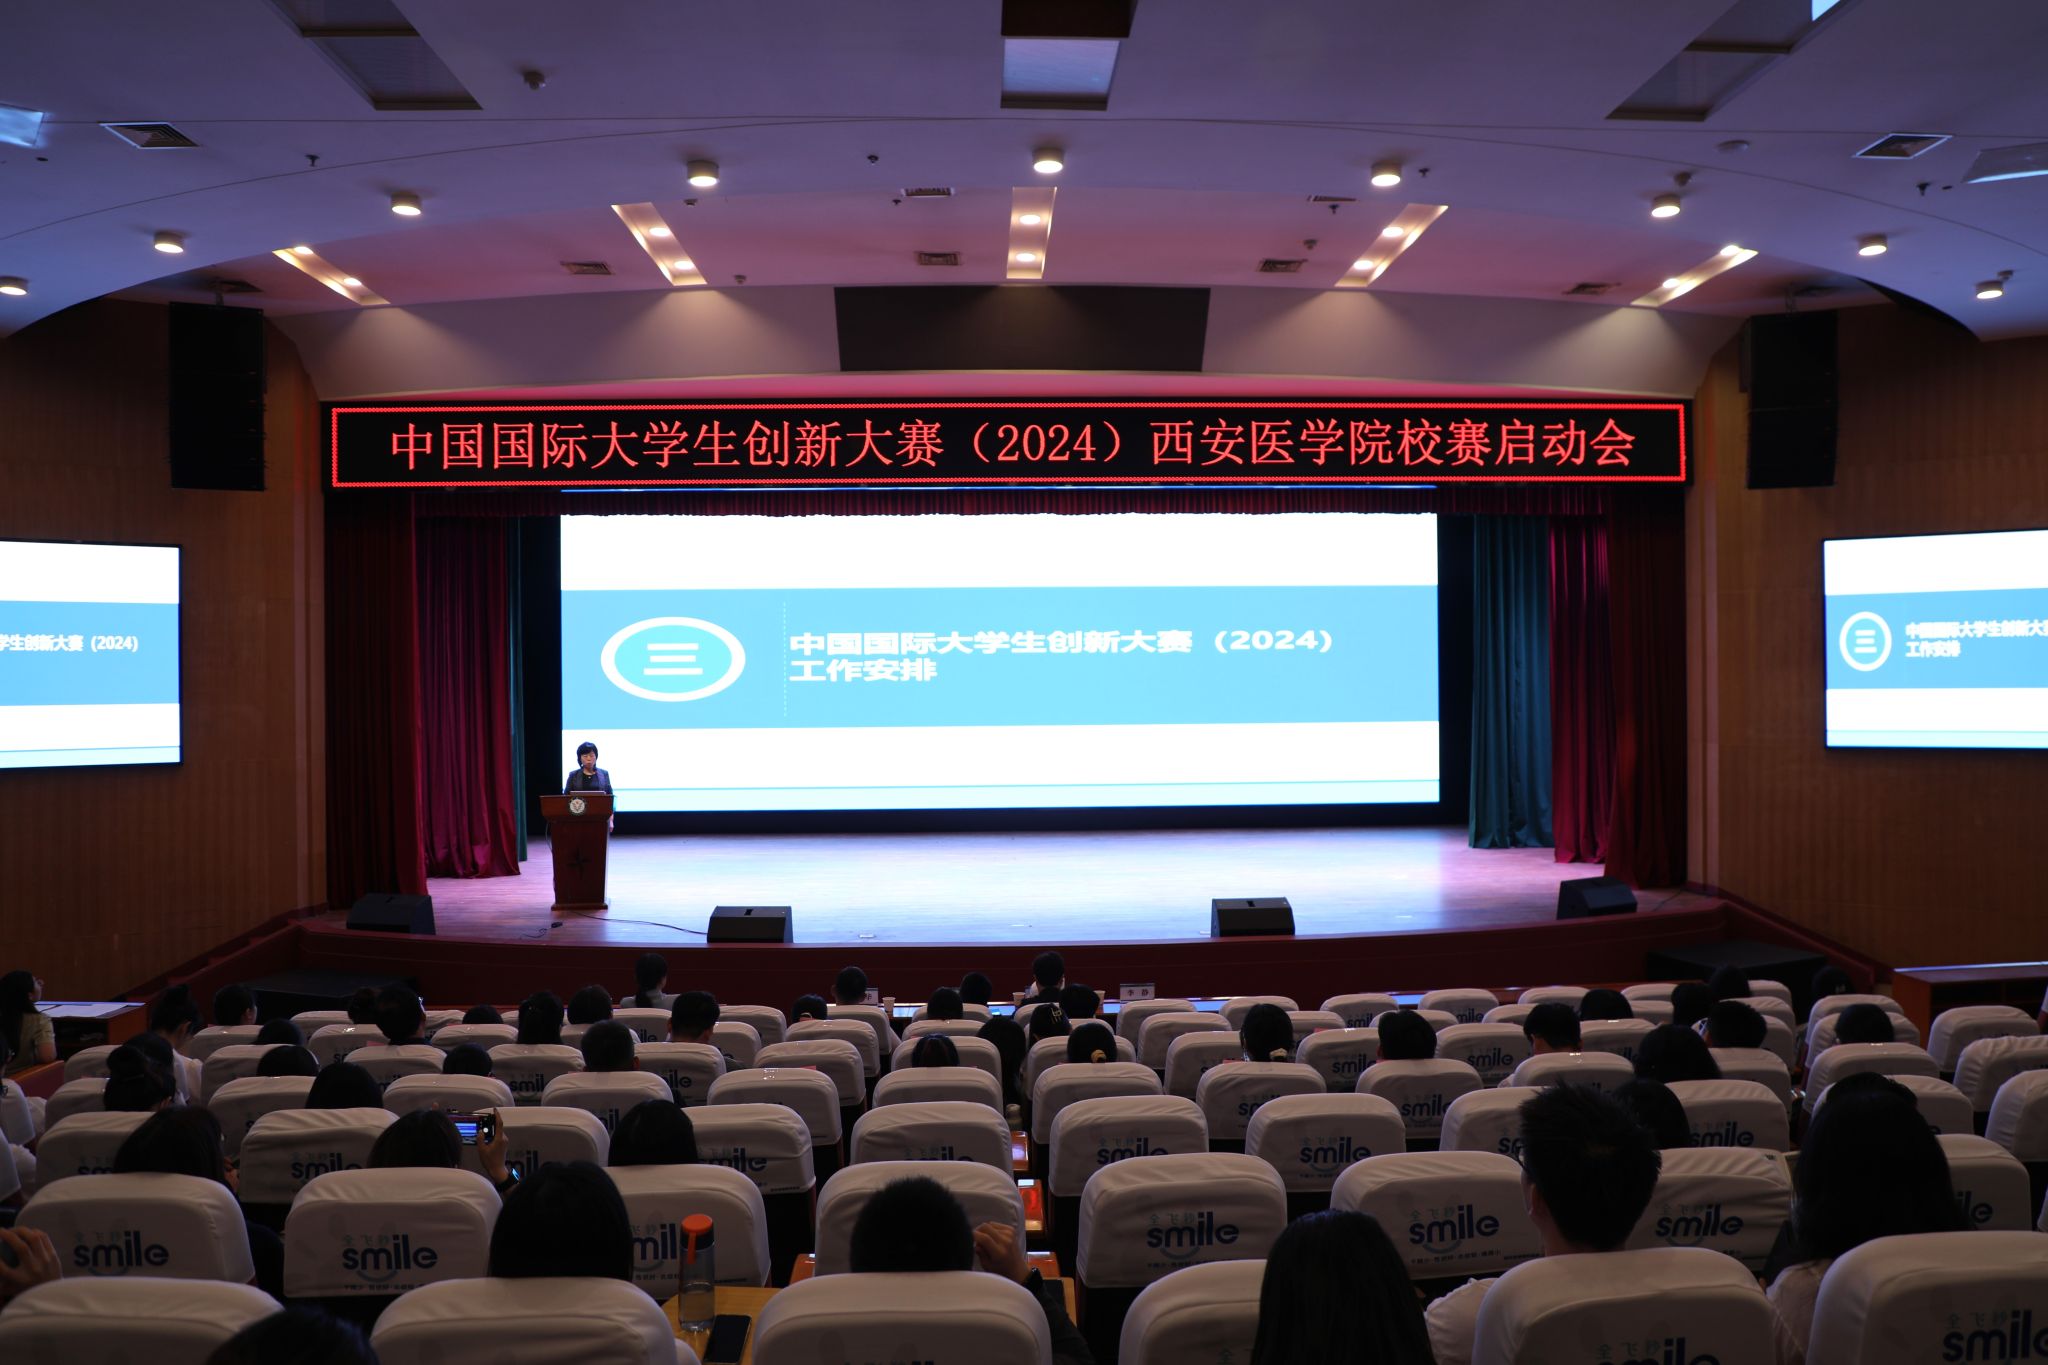 我校召开中国国际大学生创新大赛(2024)校赛启动会